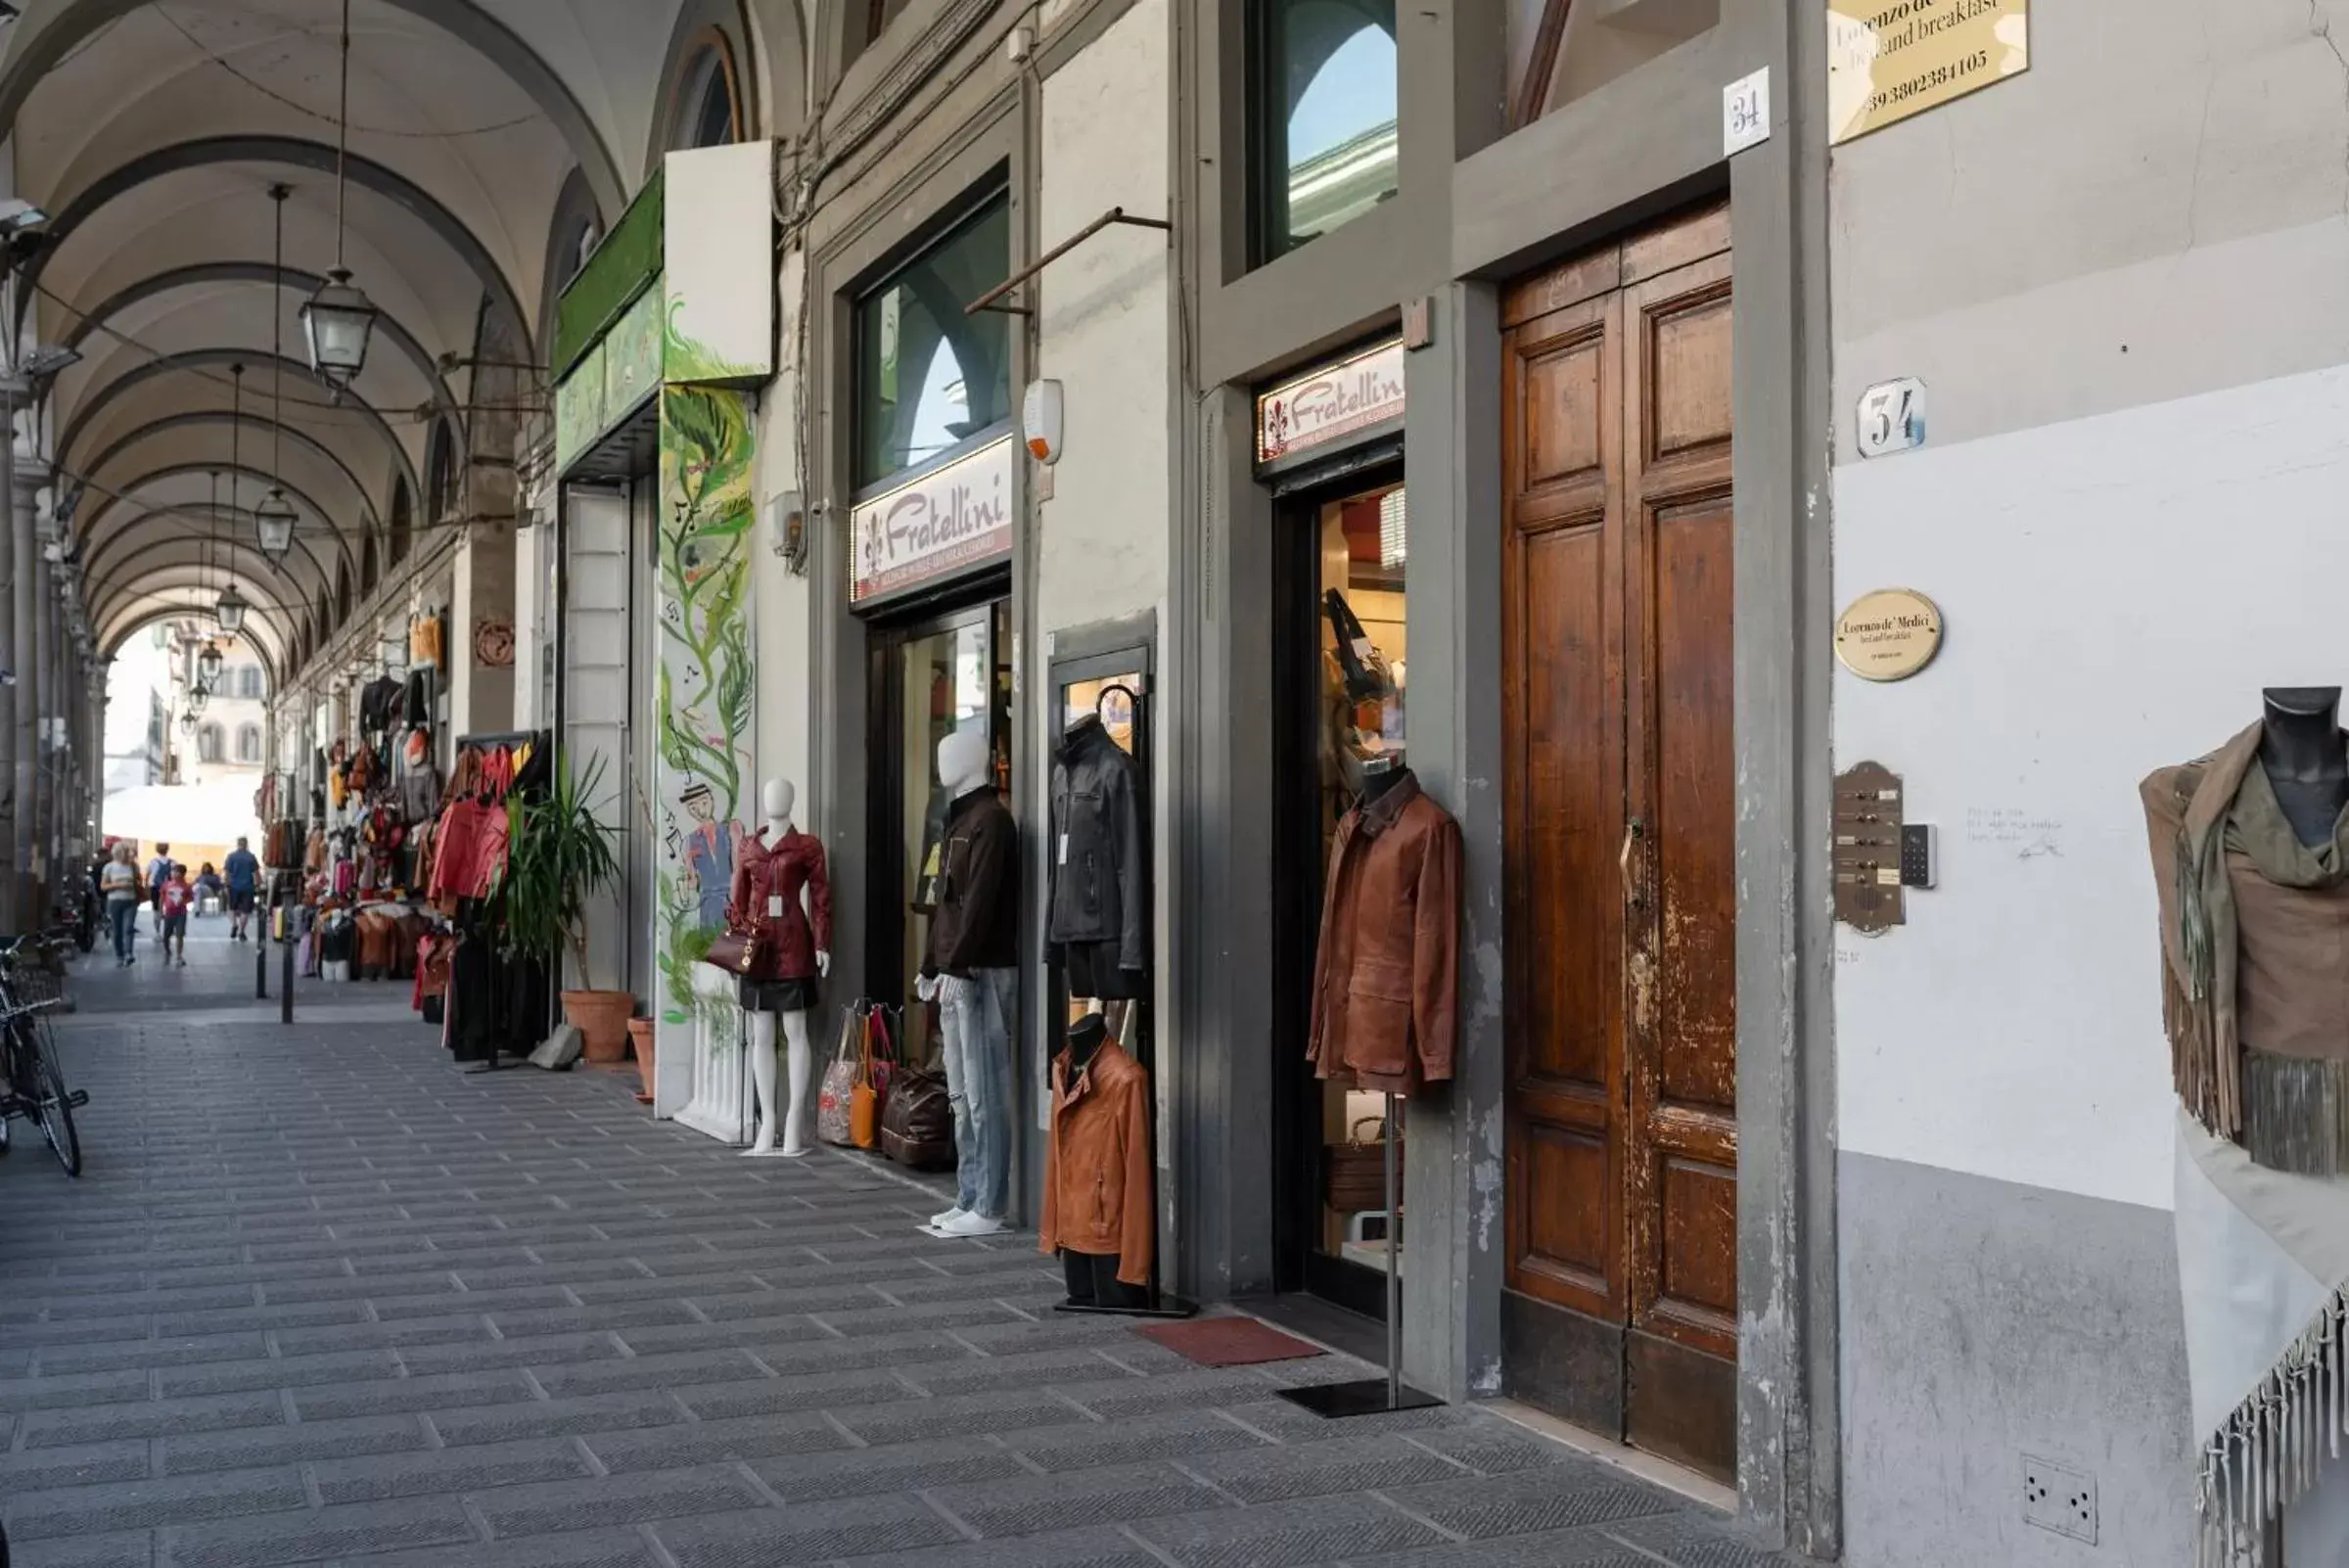 Facade/entrance in B&B Lorenzo de' Medici